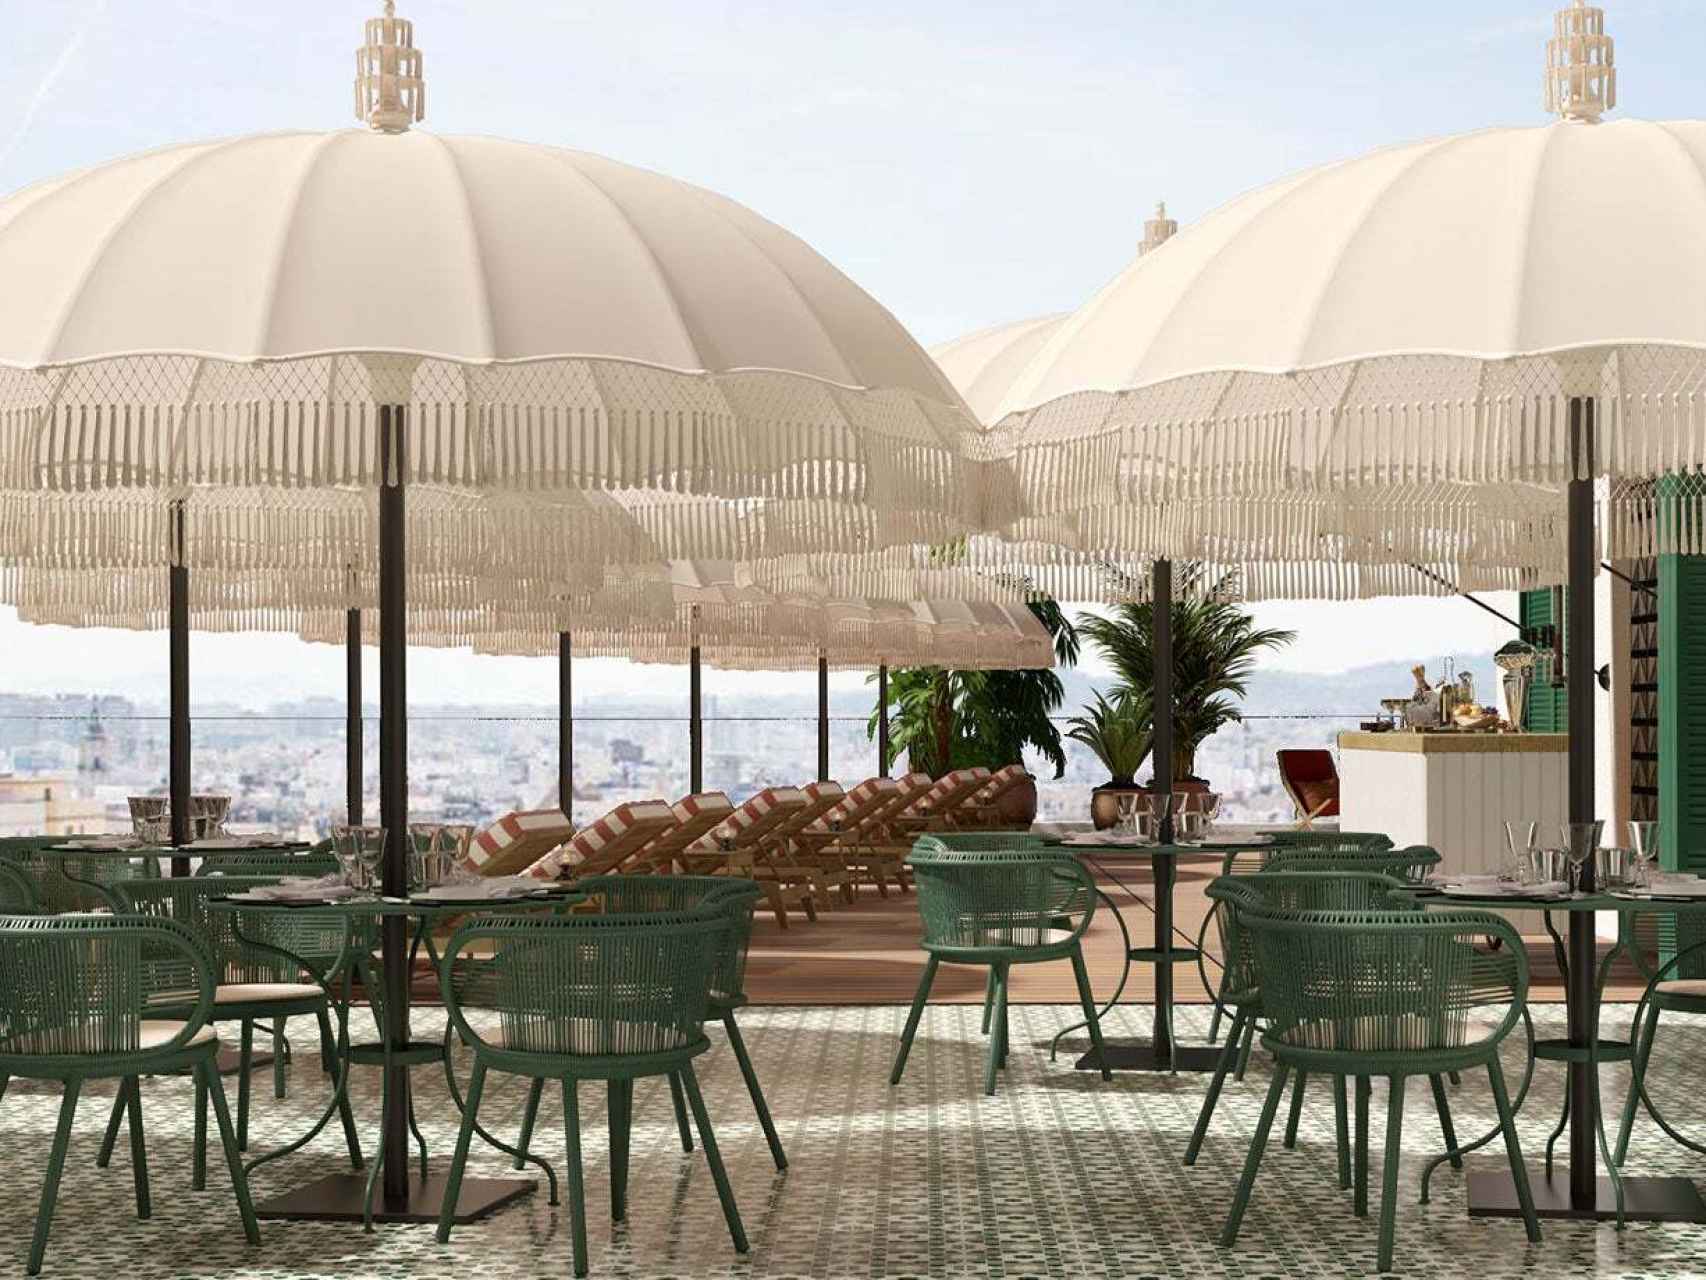 Fotos del hotel H10 Croma Málaga, diseñado por Rafael Moneo.